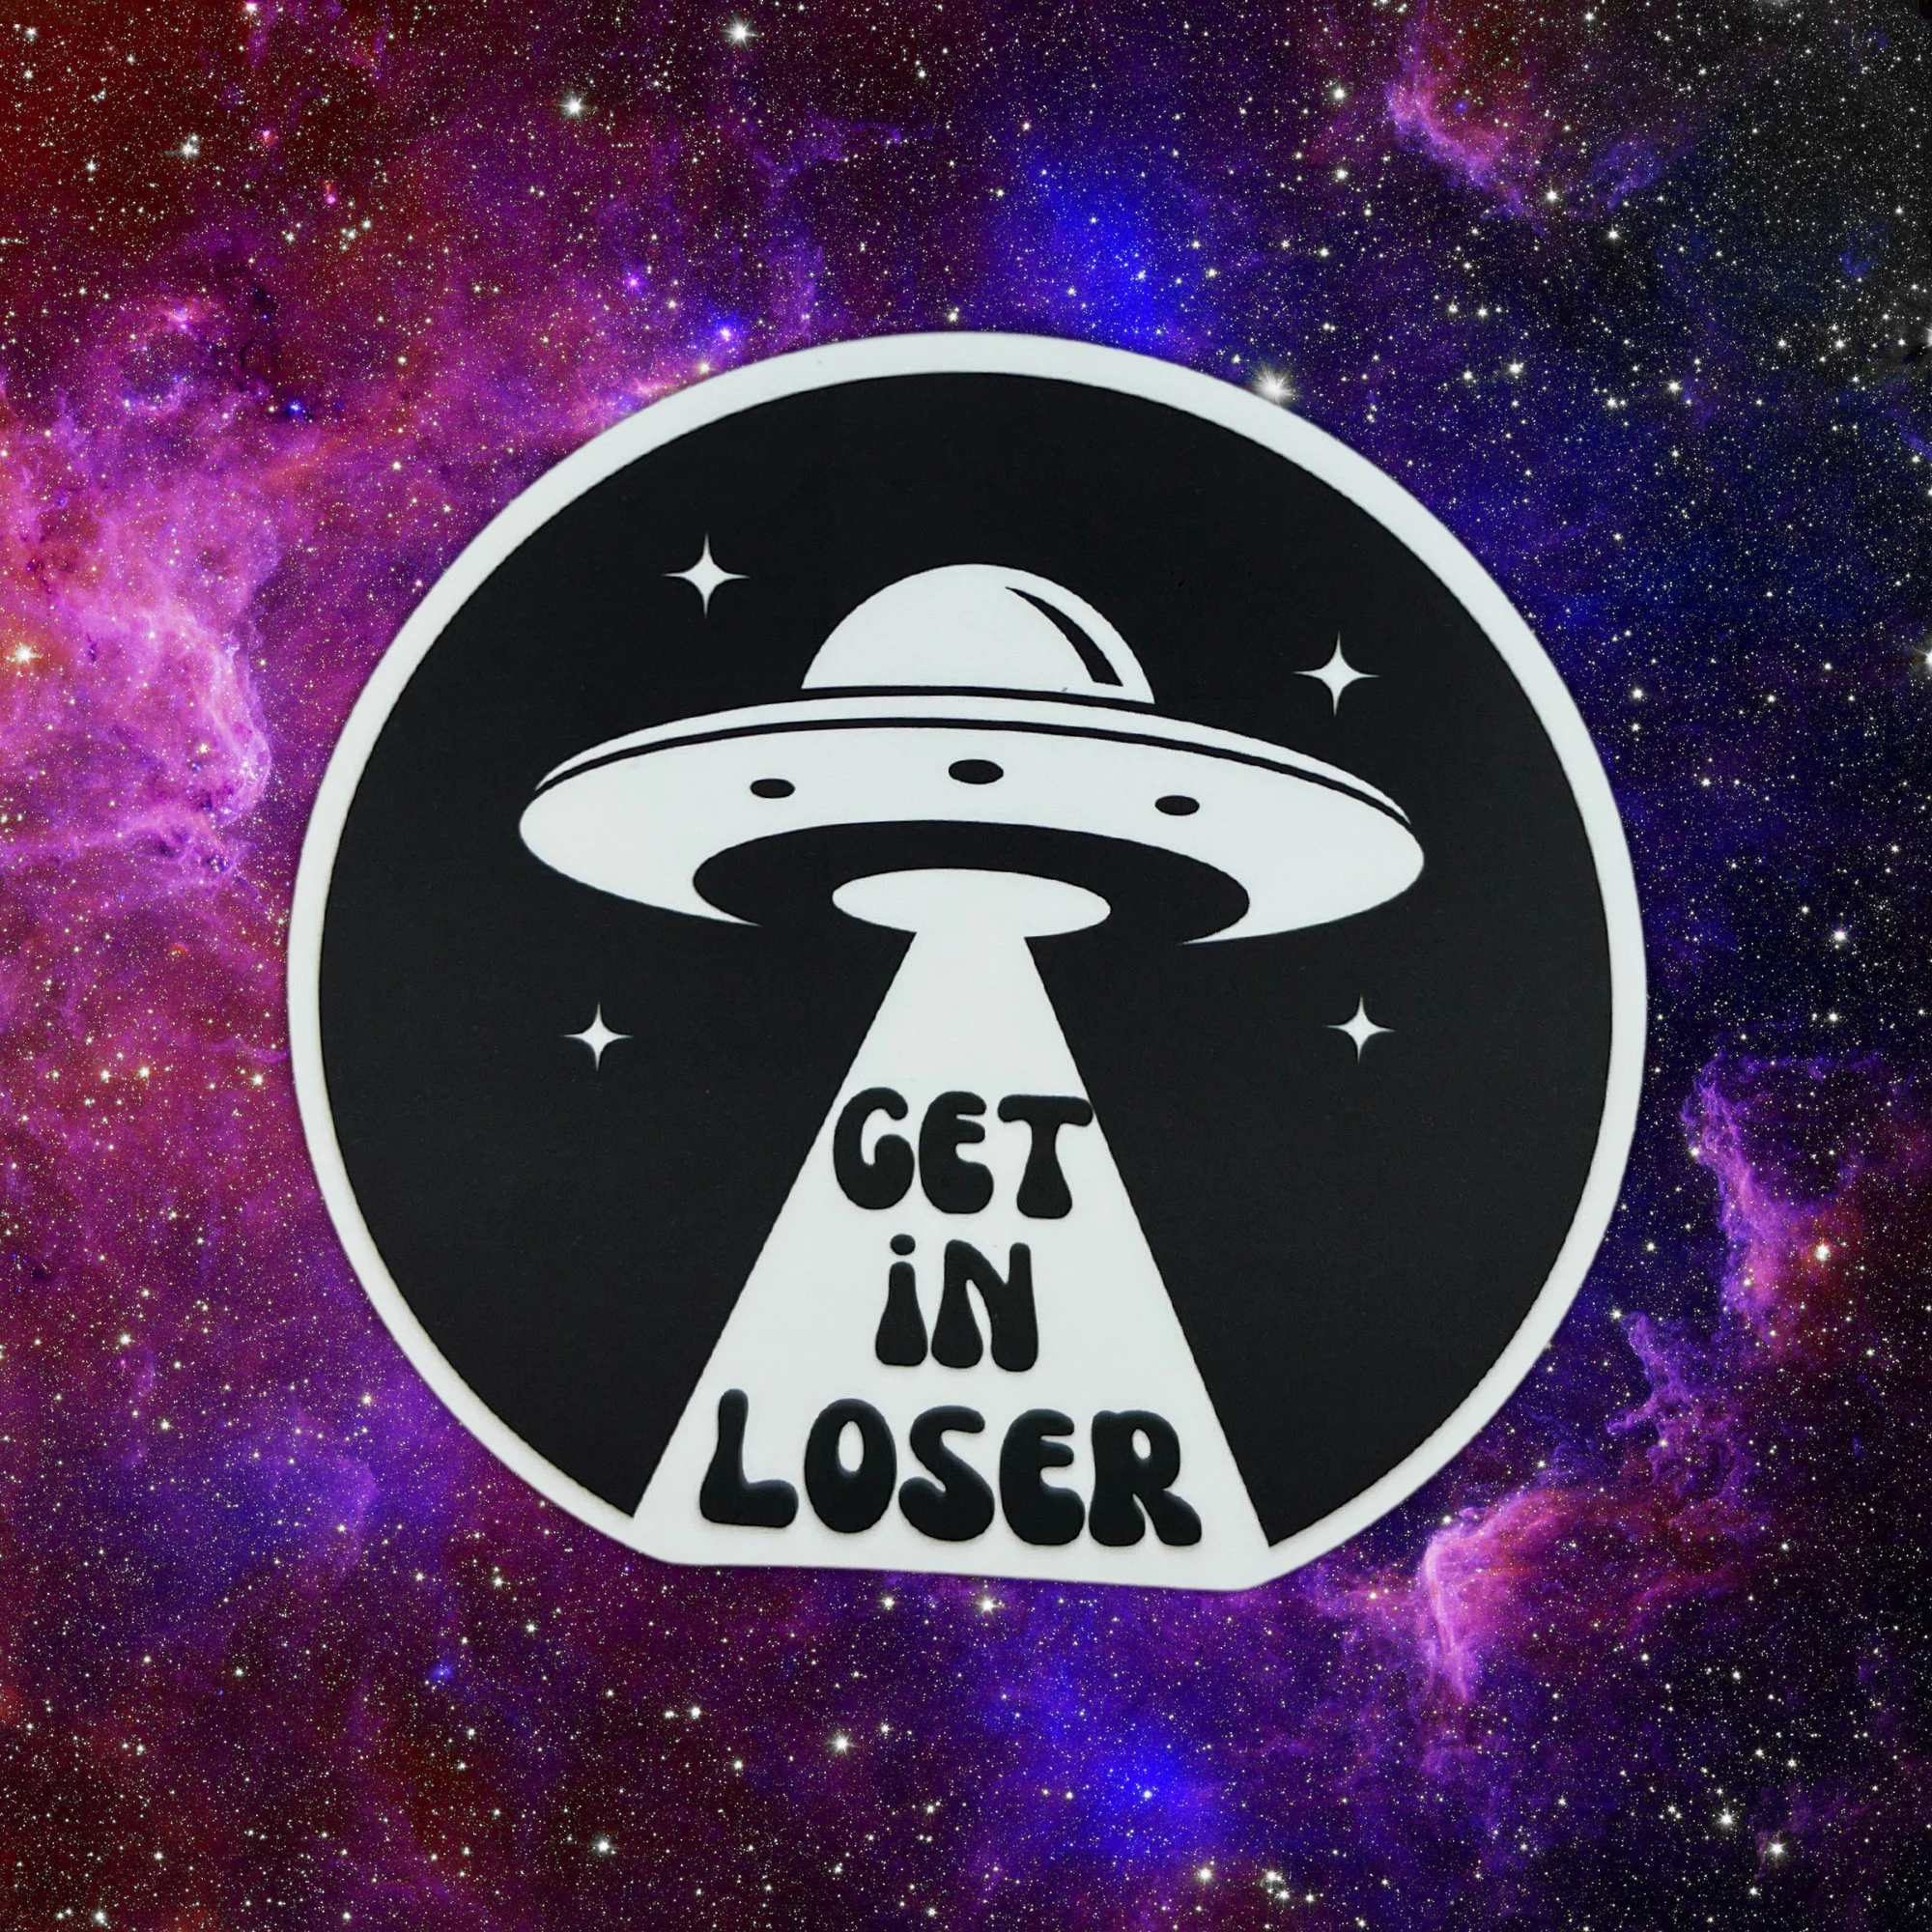 Get In Loser Sticker